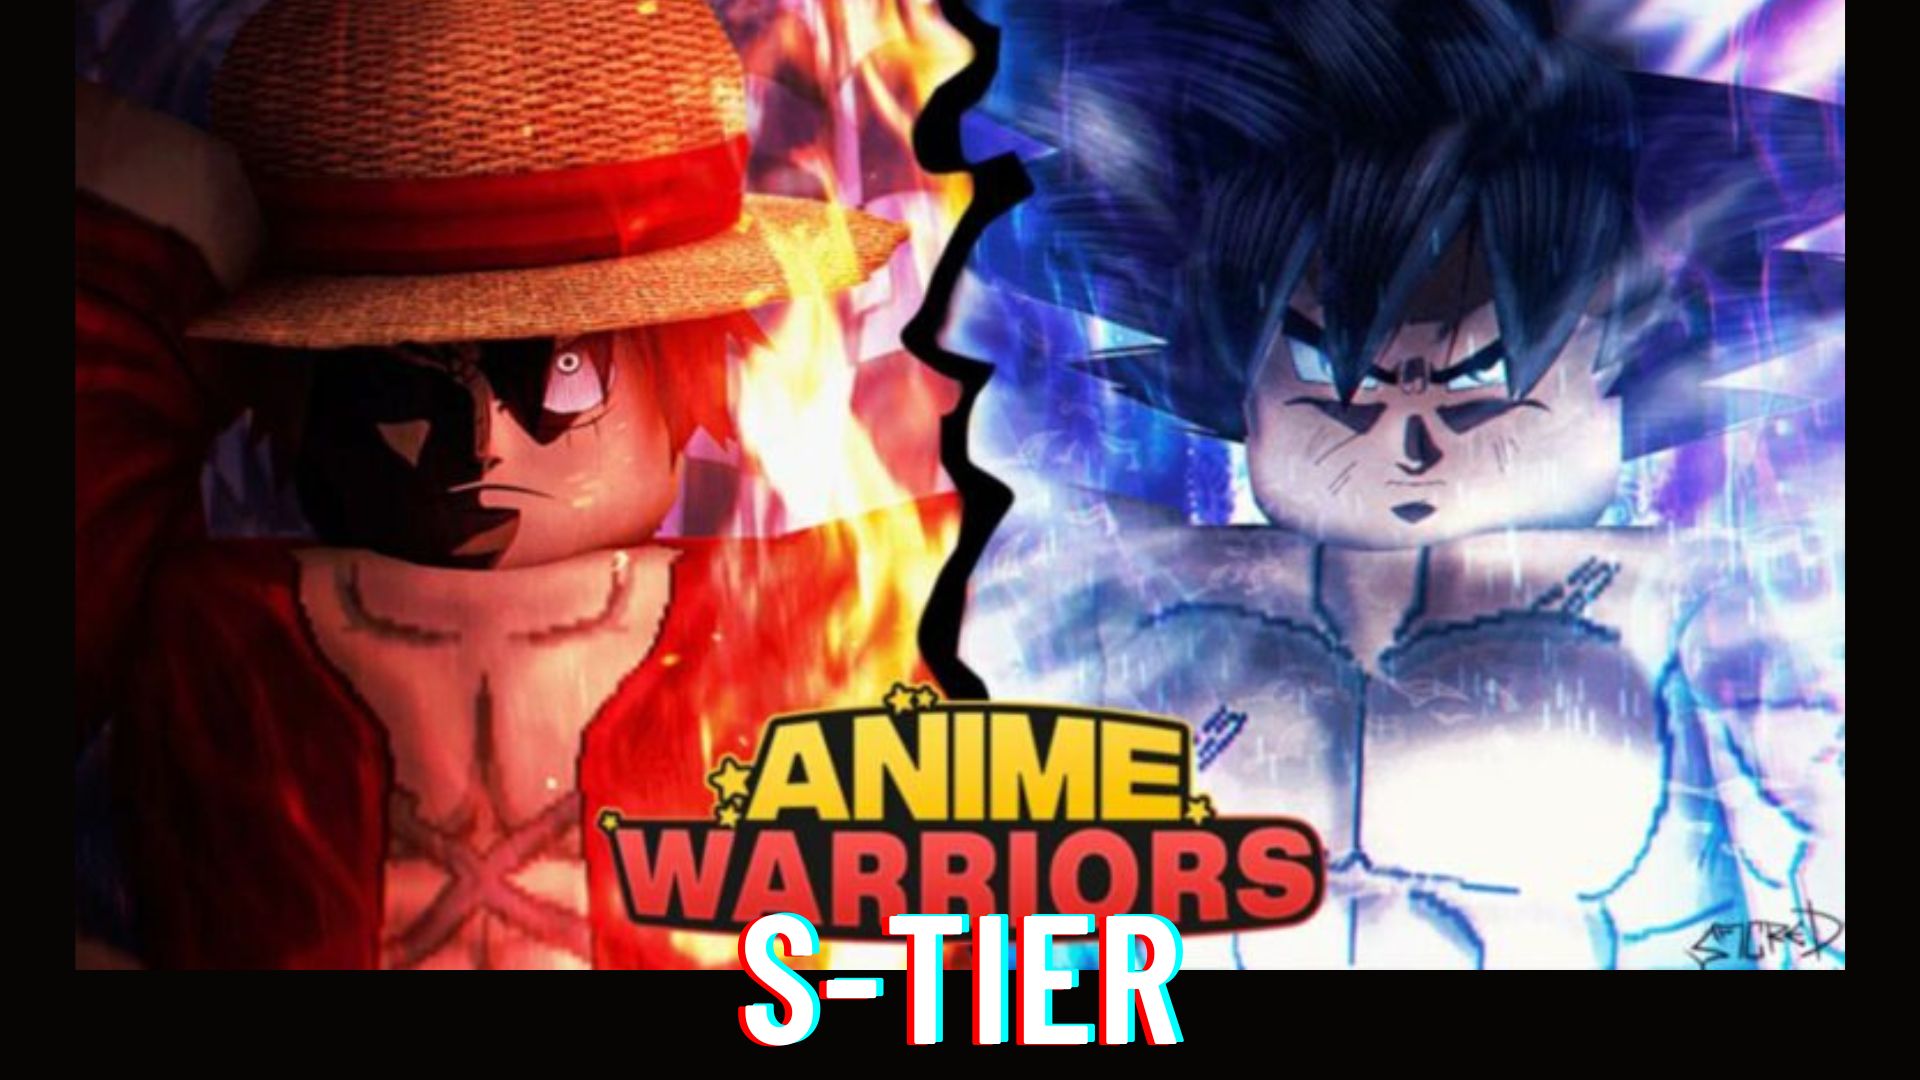 Anime warriors S